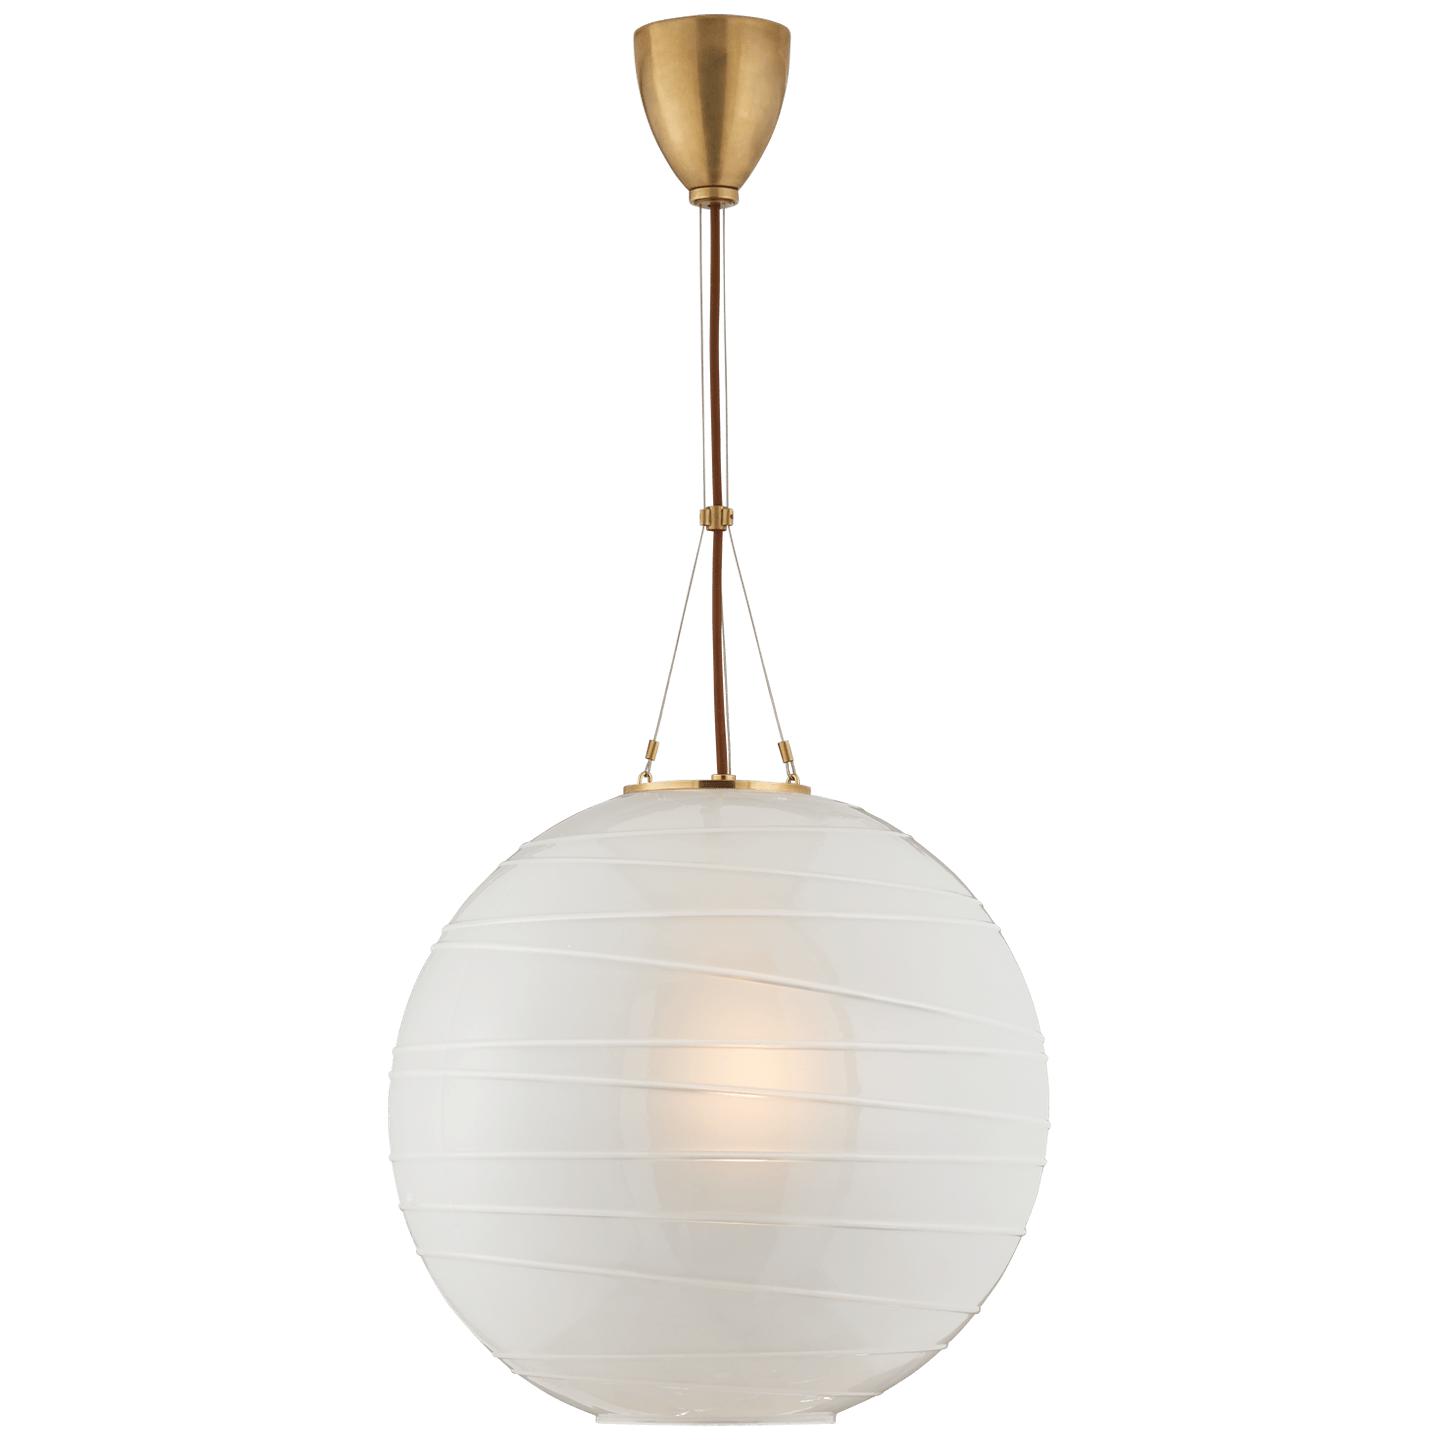 Купить Подвесной светильник Hailey Medium Round Pendant в интернет-магазине roooms.ru